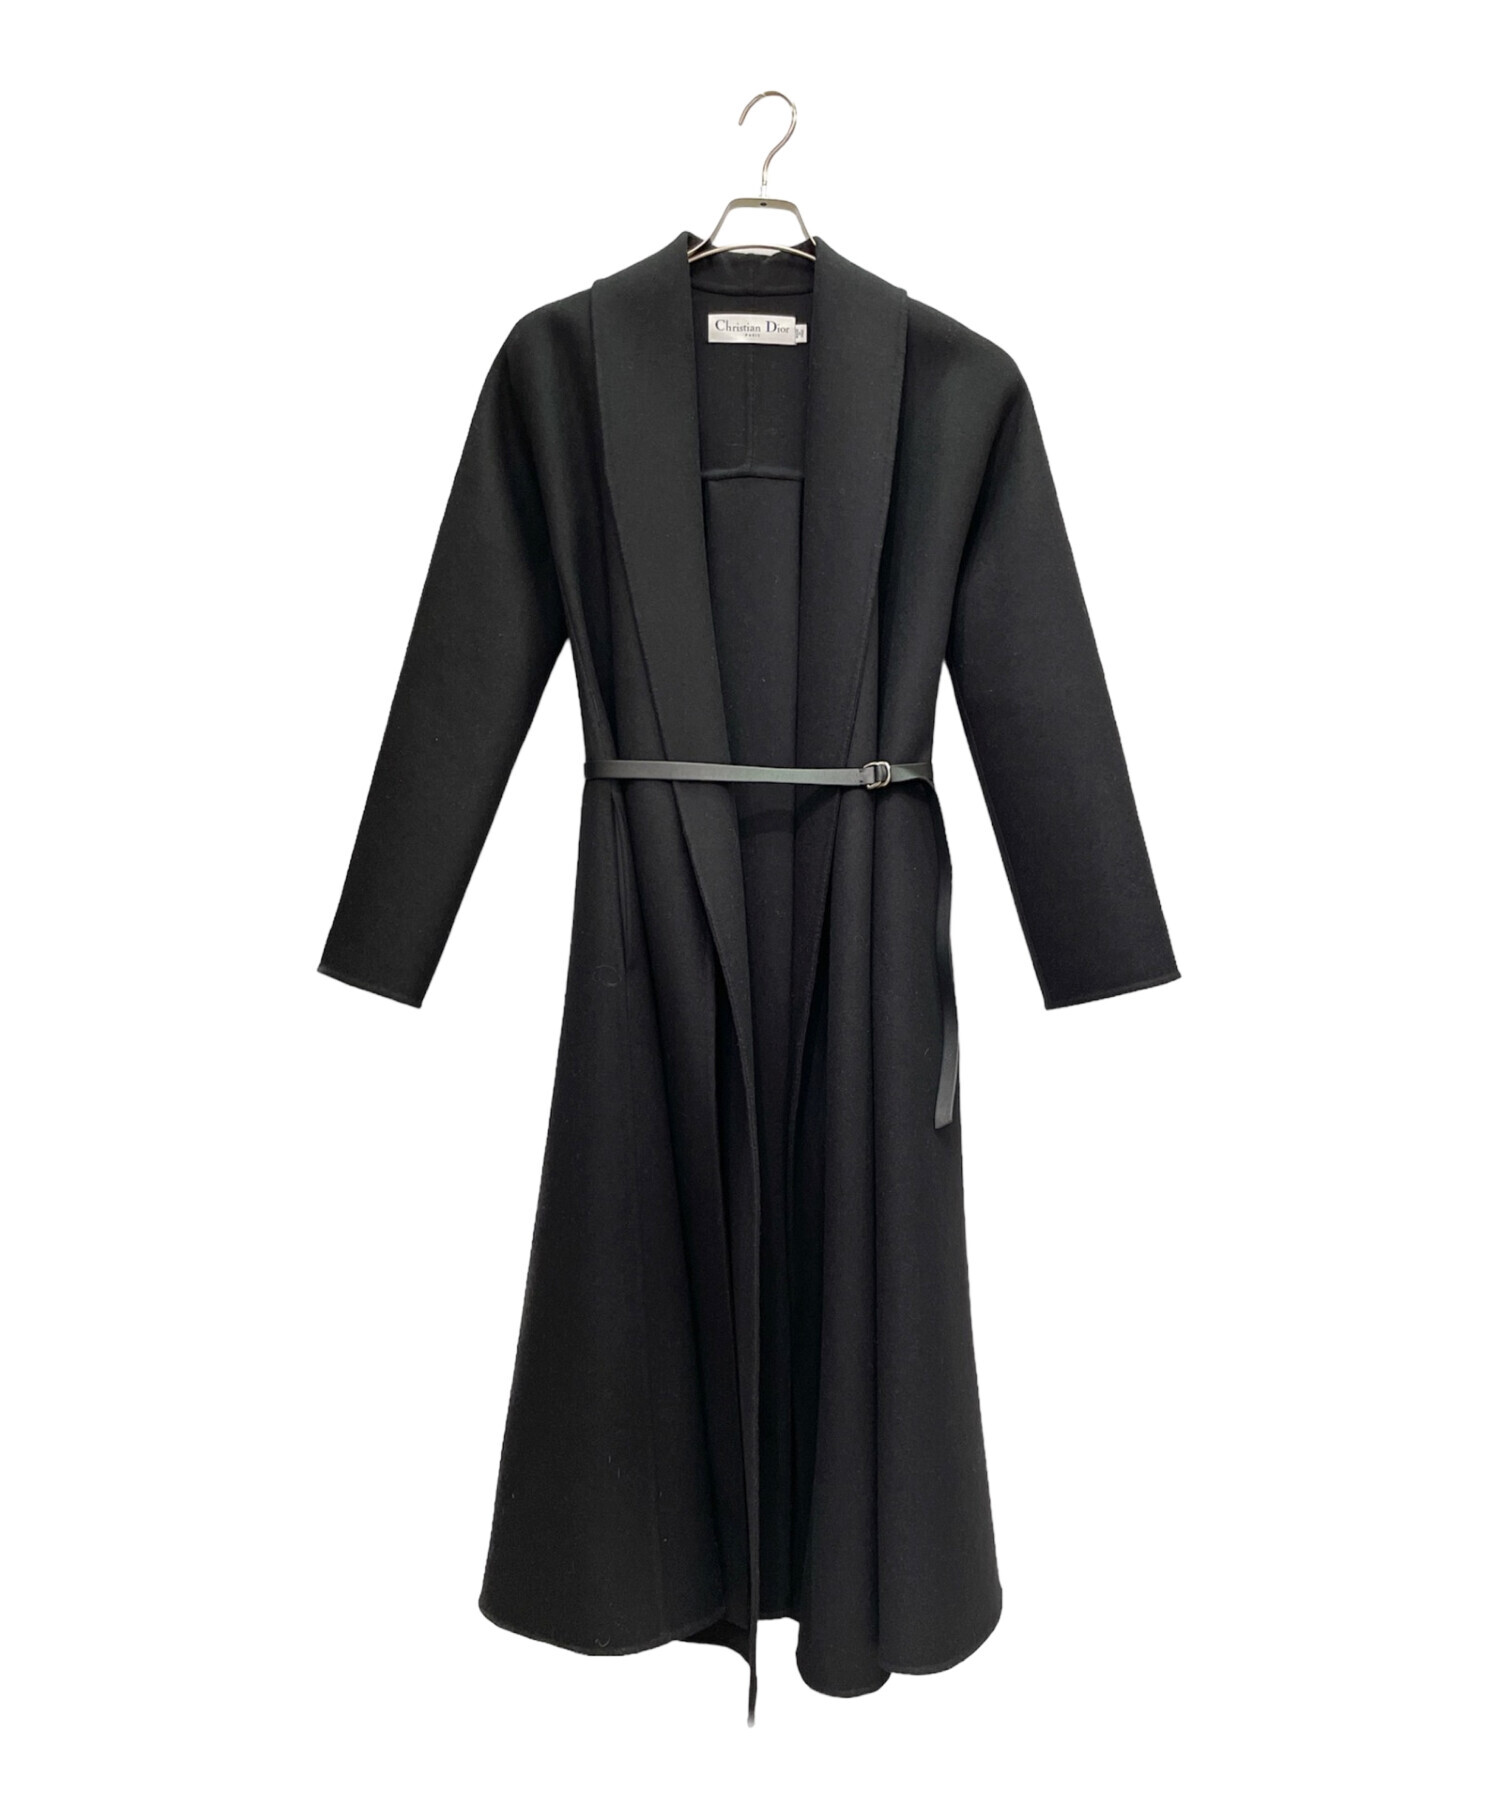 Christian Dior (クリスチャン ディオール) ウールアンゴラ コート ブラック サイズ:34